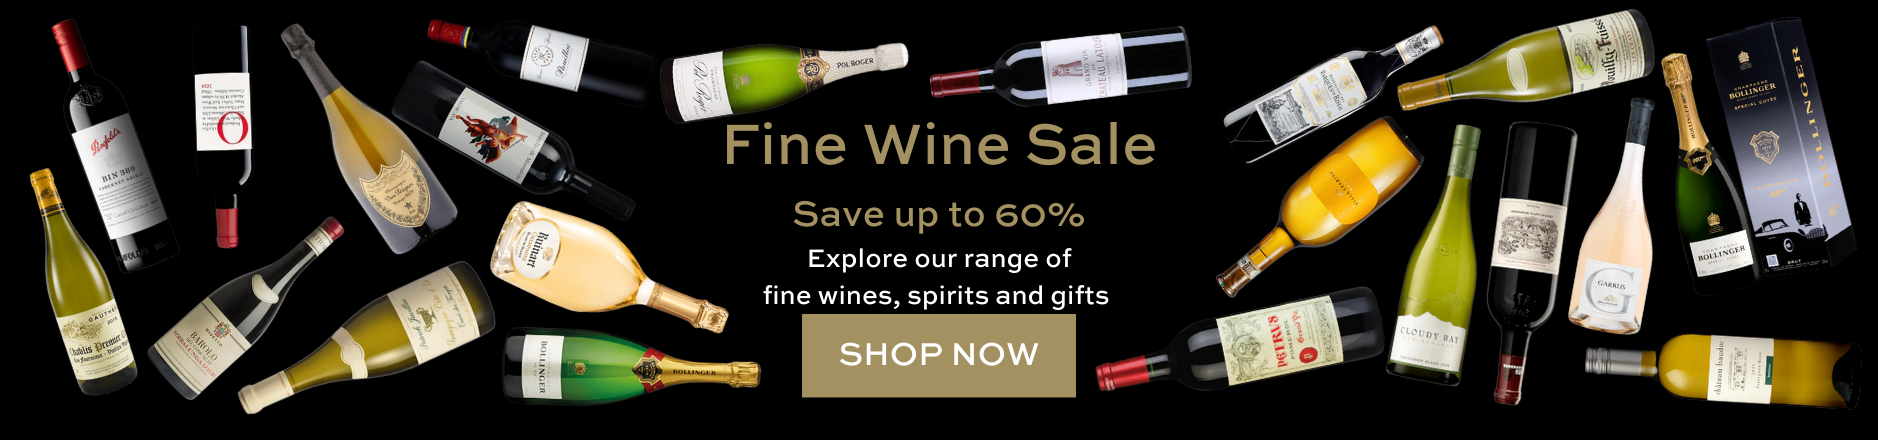 Fine Wine Sale, Fine Wines, Fine Wine - Save up to 60% on fine wines